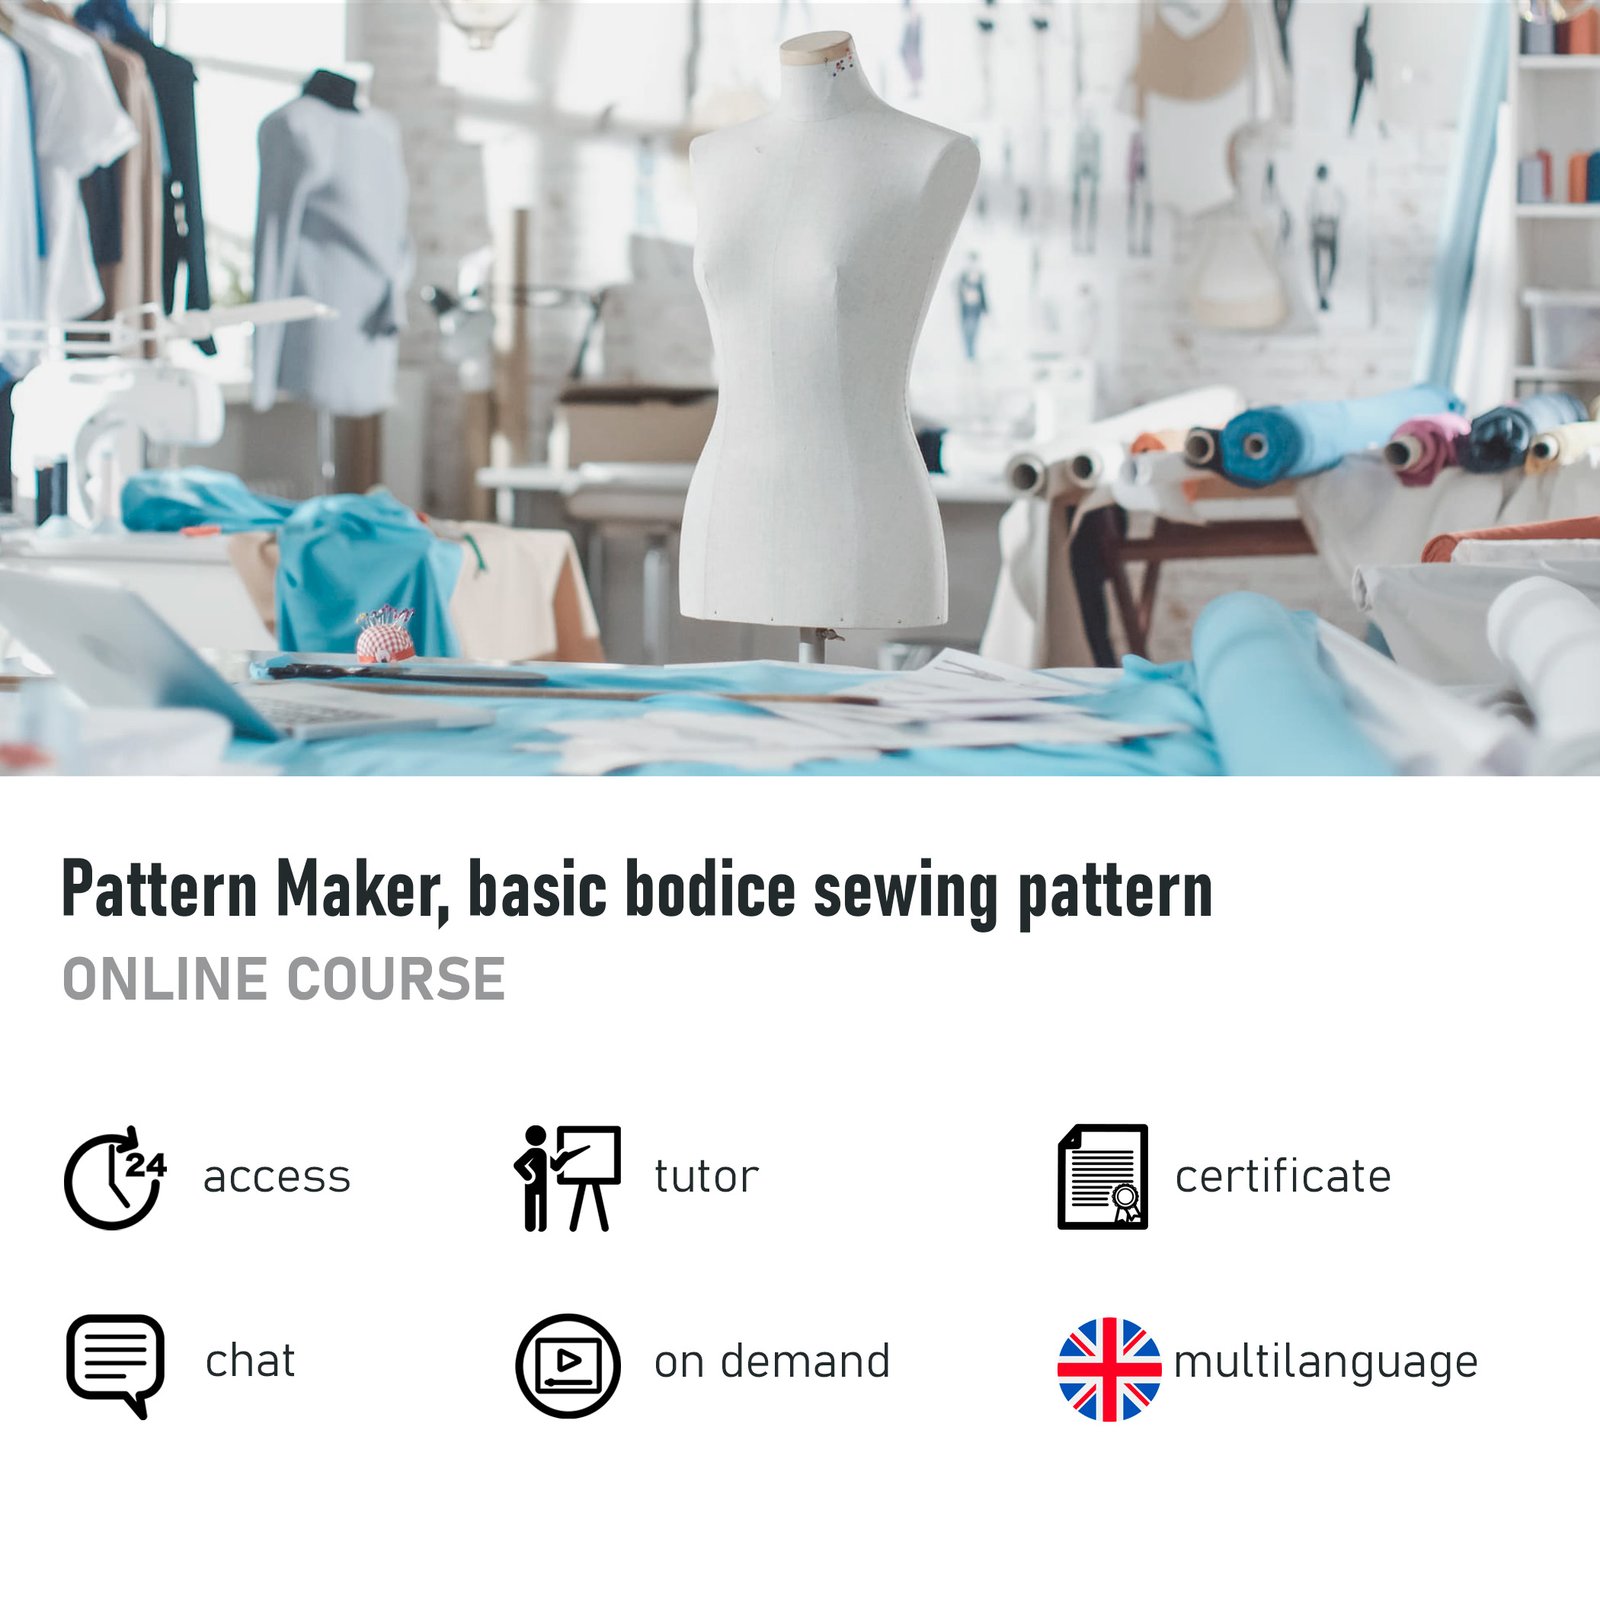 pattern maker course, pattern maker, pattern maker courses, pattern making, pattern making course